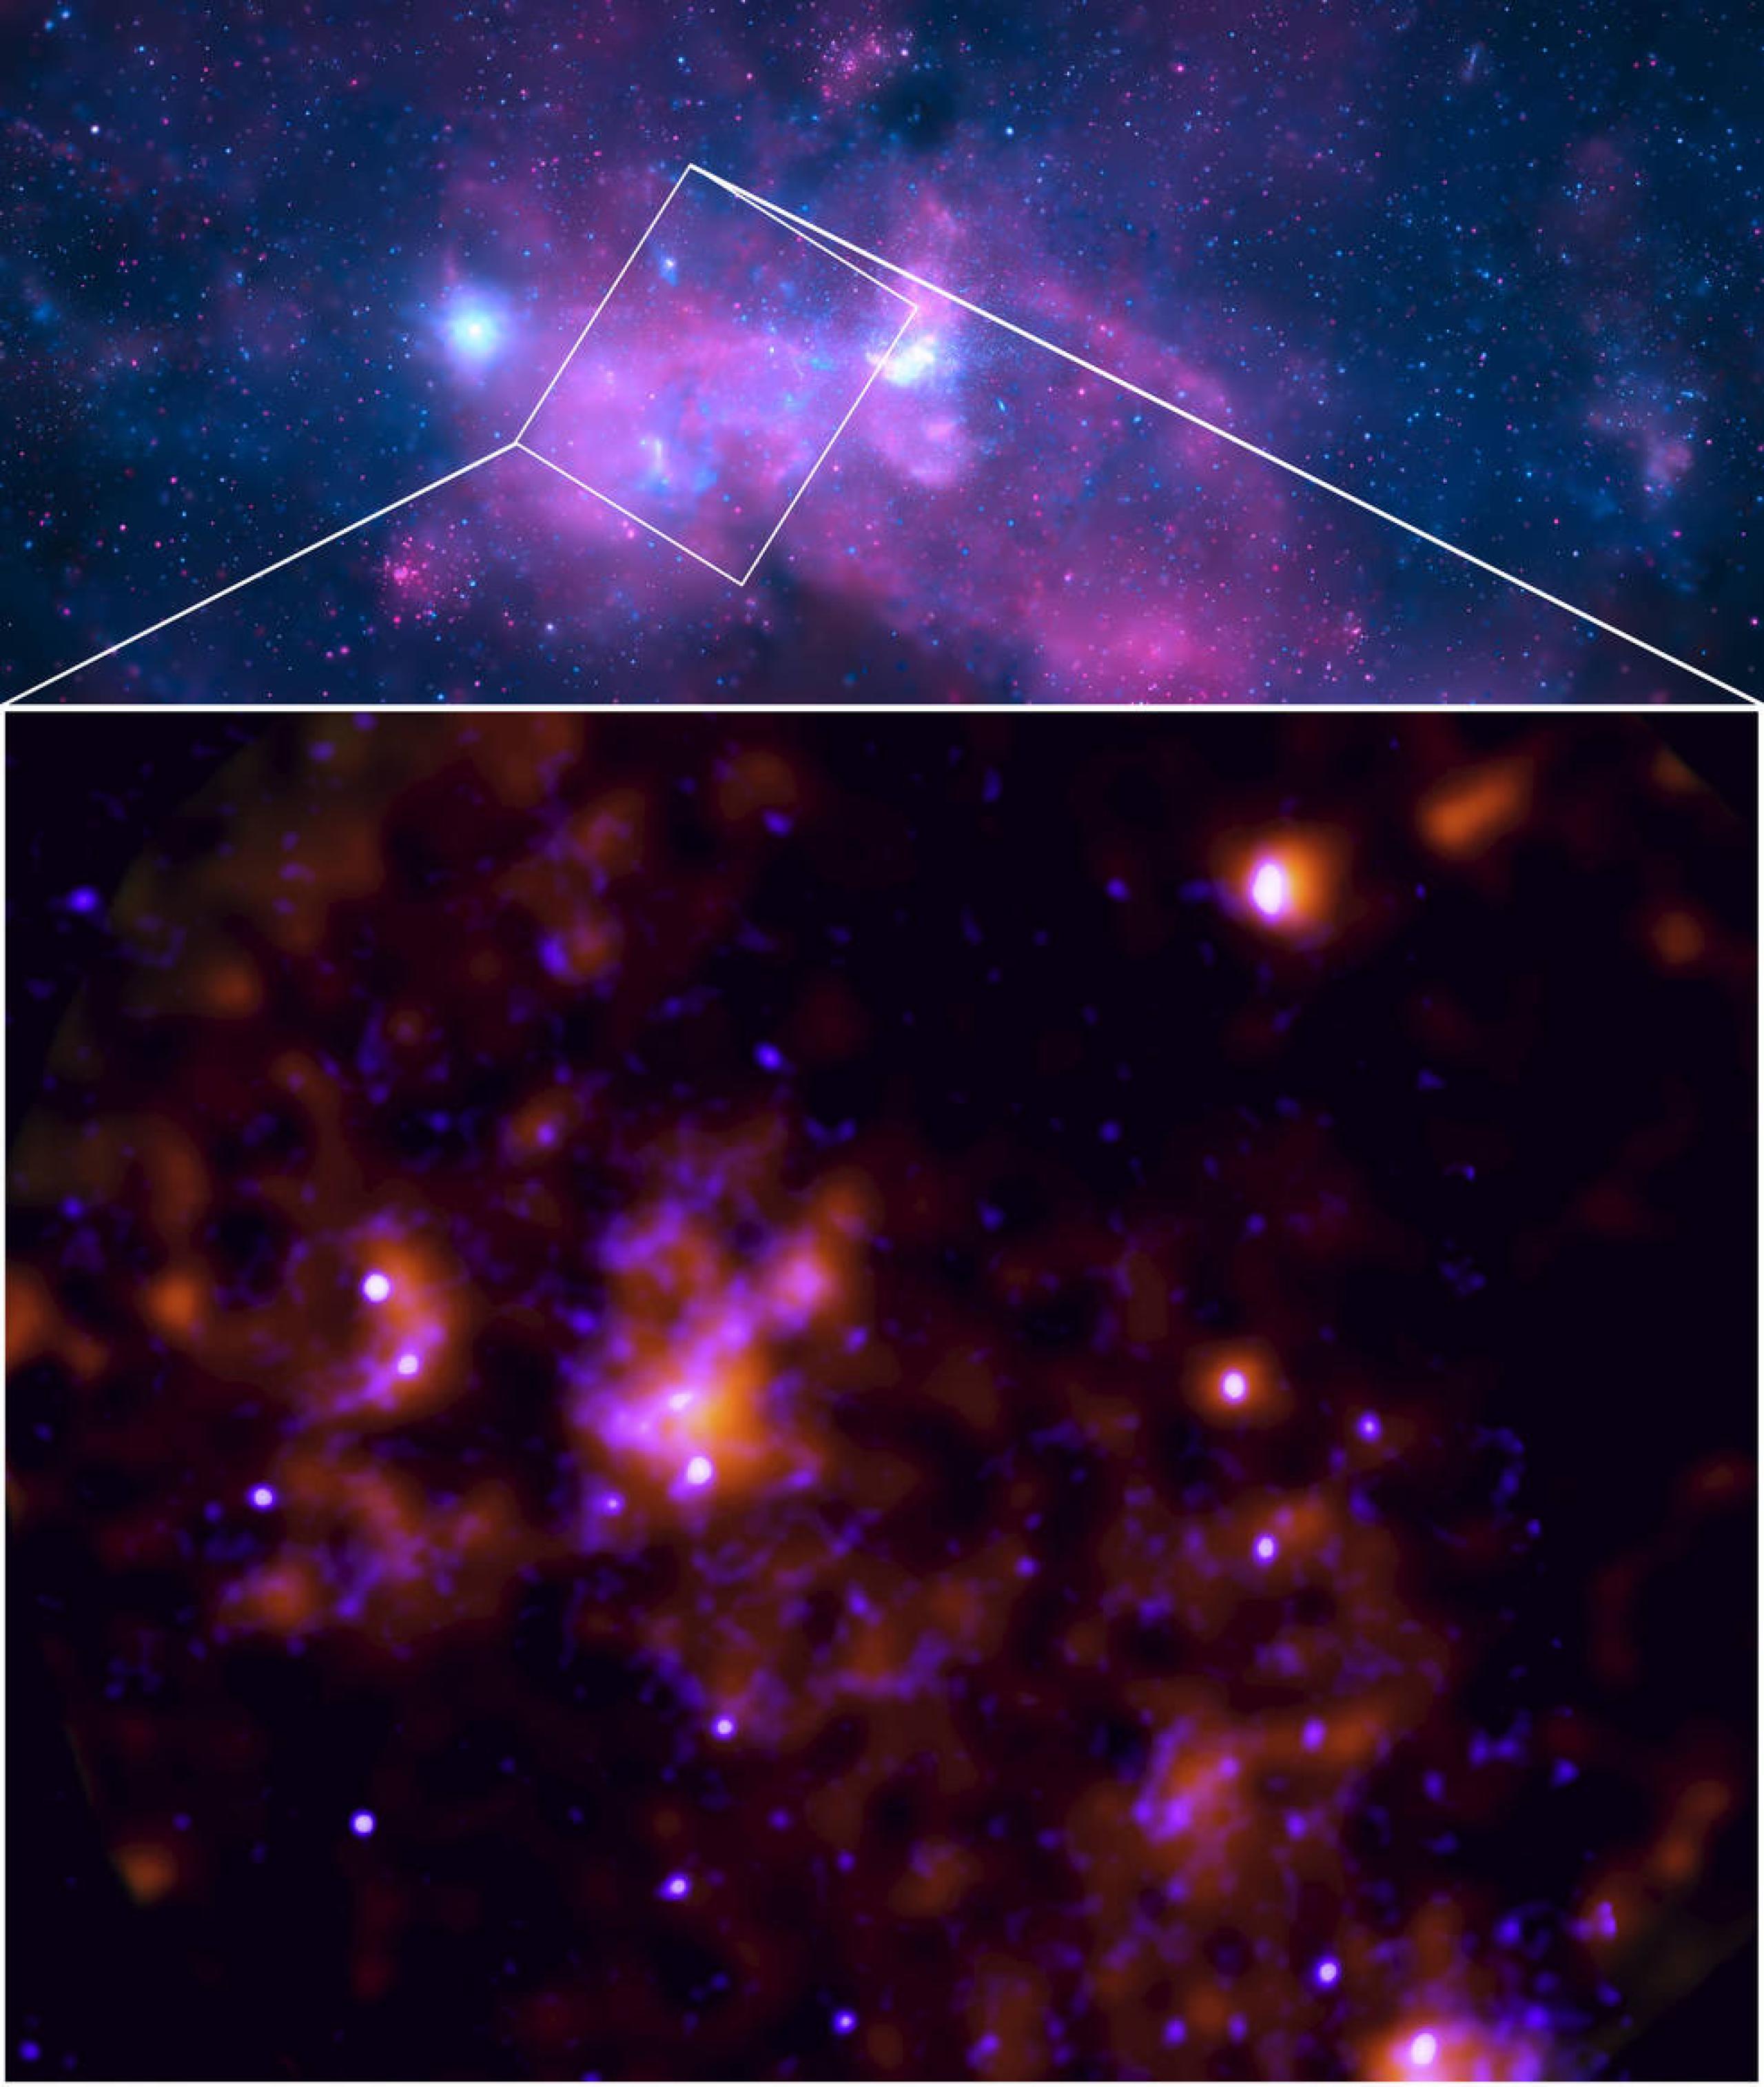 Las imágenes del Explorador de polarimetría de imágenes de rayos X de la NASA y del Observatorio de rayos X Chandra se han combinado para mostrar datos de rayos X del área alrededor de Sagitario A*, el agujero negro supermasivo en el núcleo de la galaxia Vía Láctea. El cuadro de abajo combina datos de IXPE, en naranja, con datos de Chandra, en azul. El cuadro de arriba representa un campo de visión mucho más amplio del centro de la Vía Láctea, por cortesía de Chandra.